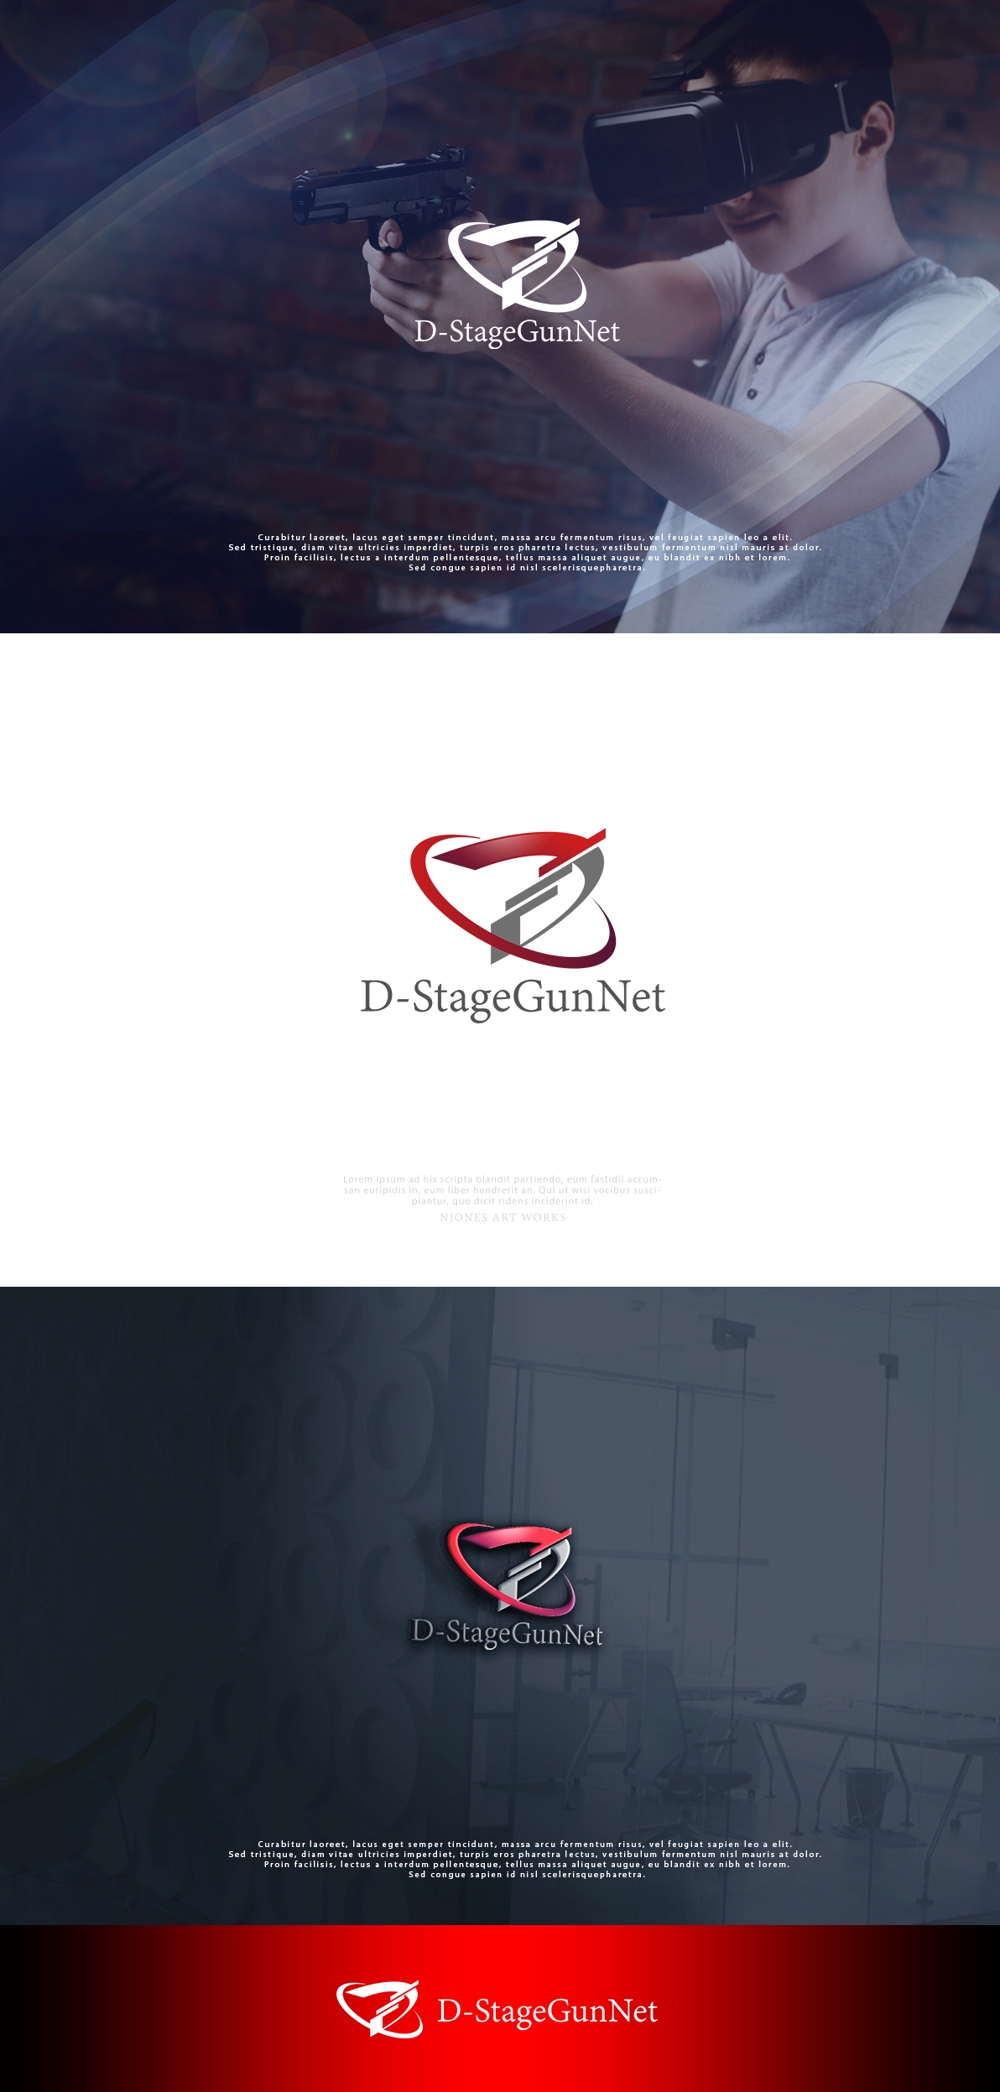 D-StageGunNet3.jpg